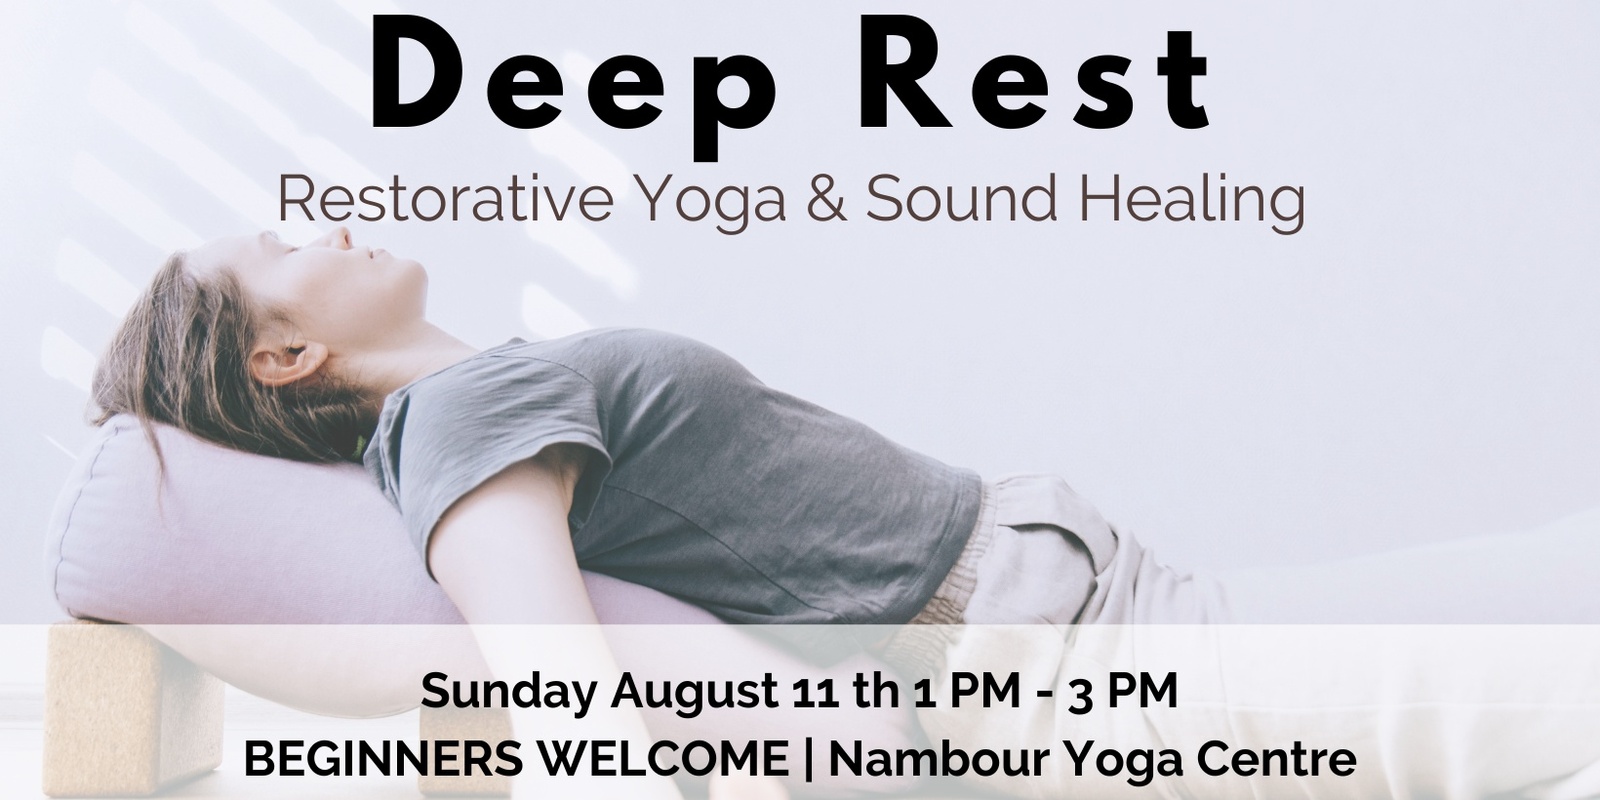 Banner image for Deep Rest - Restorative Yoga & Sound Healing 